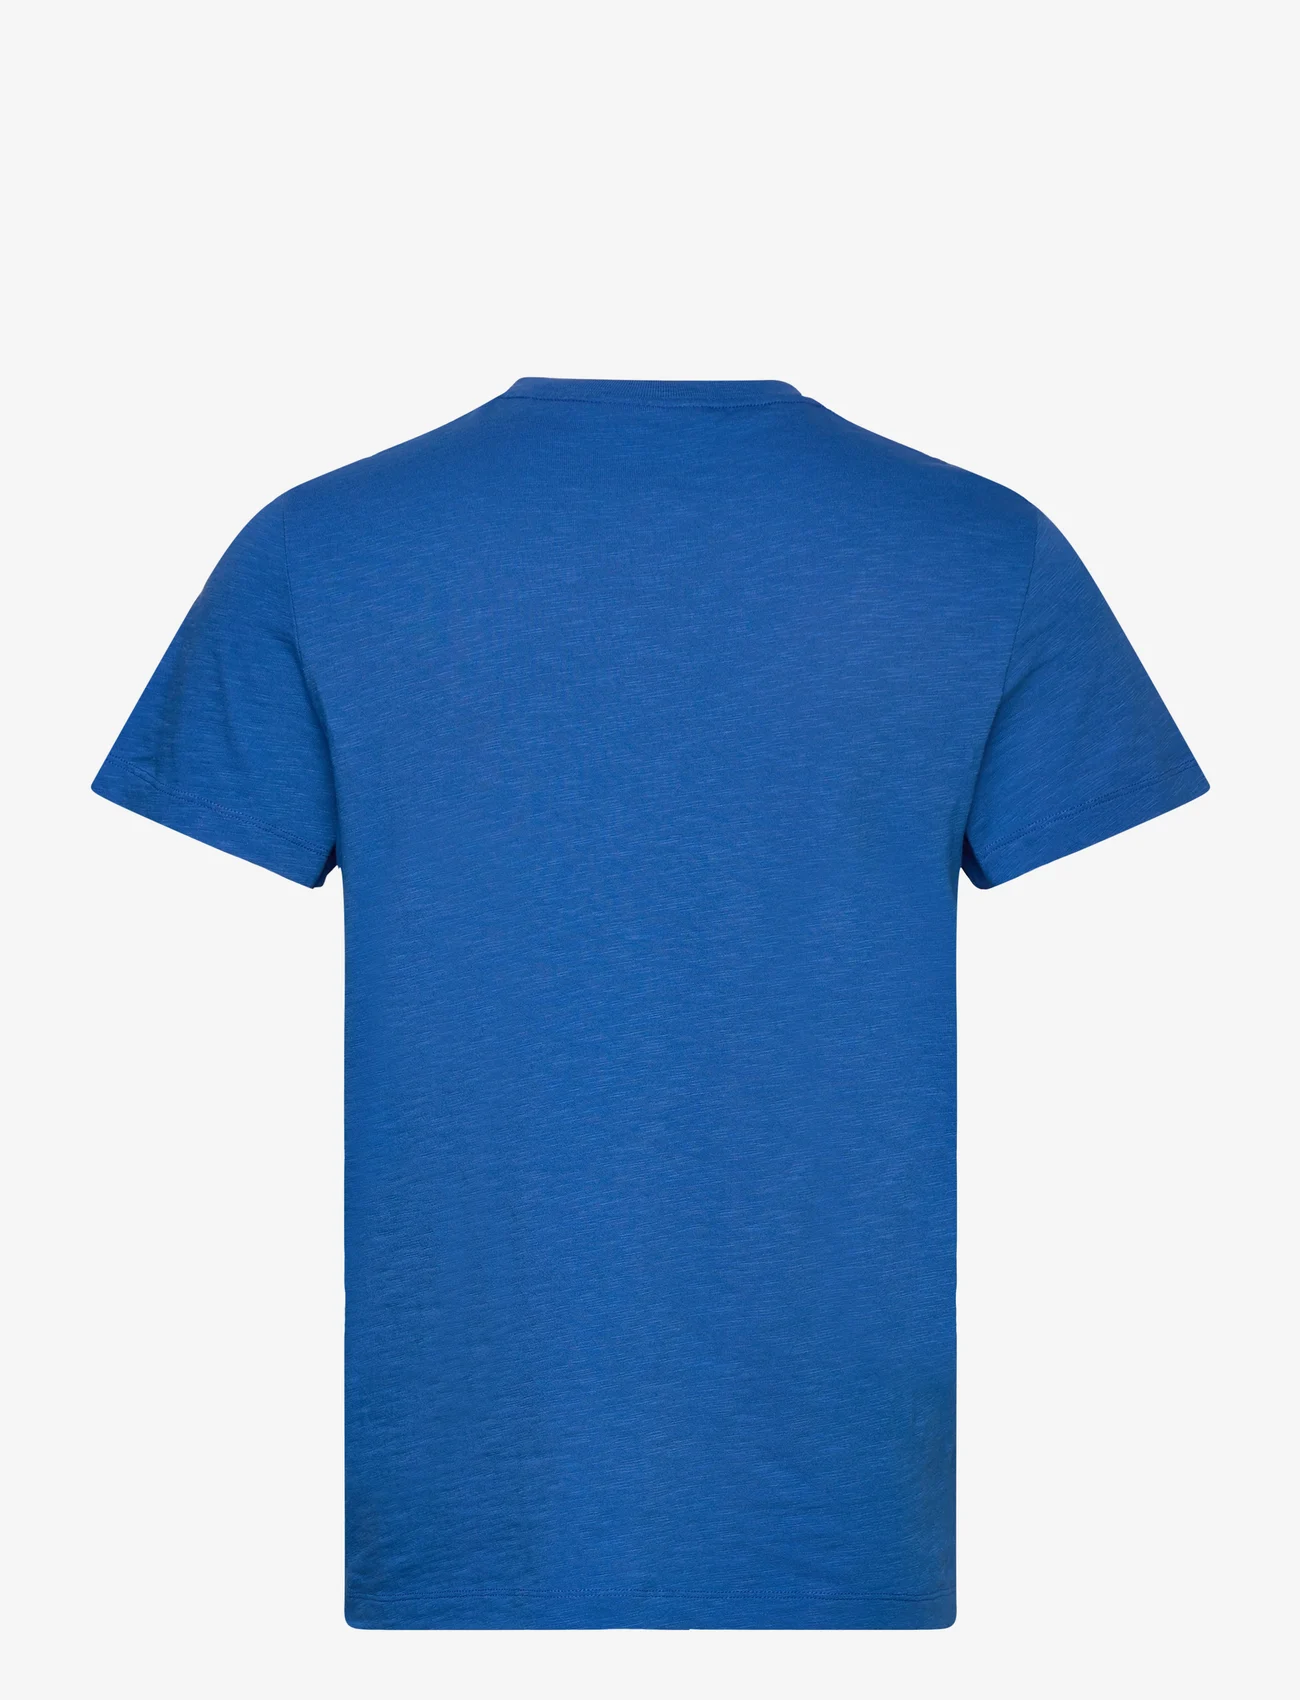 Morris - Lily Tee - laisvalaikio marškinėliai - blue - 1